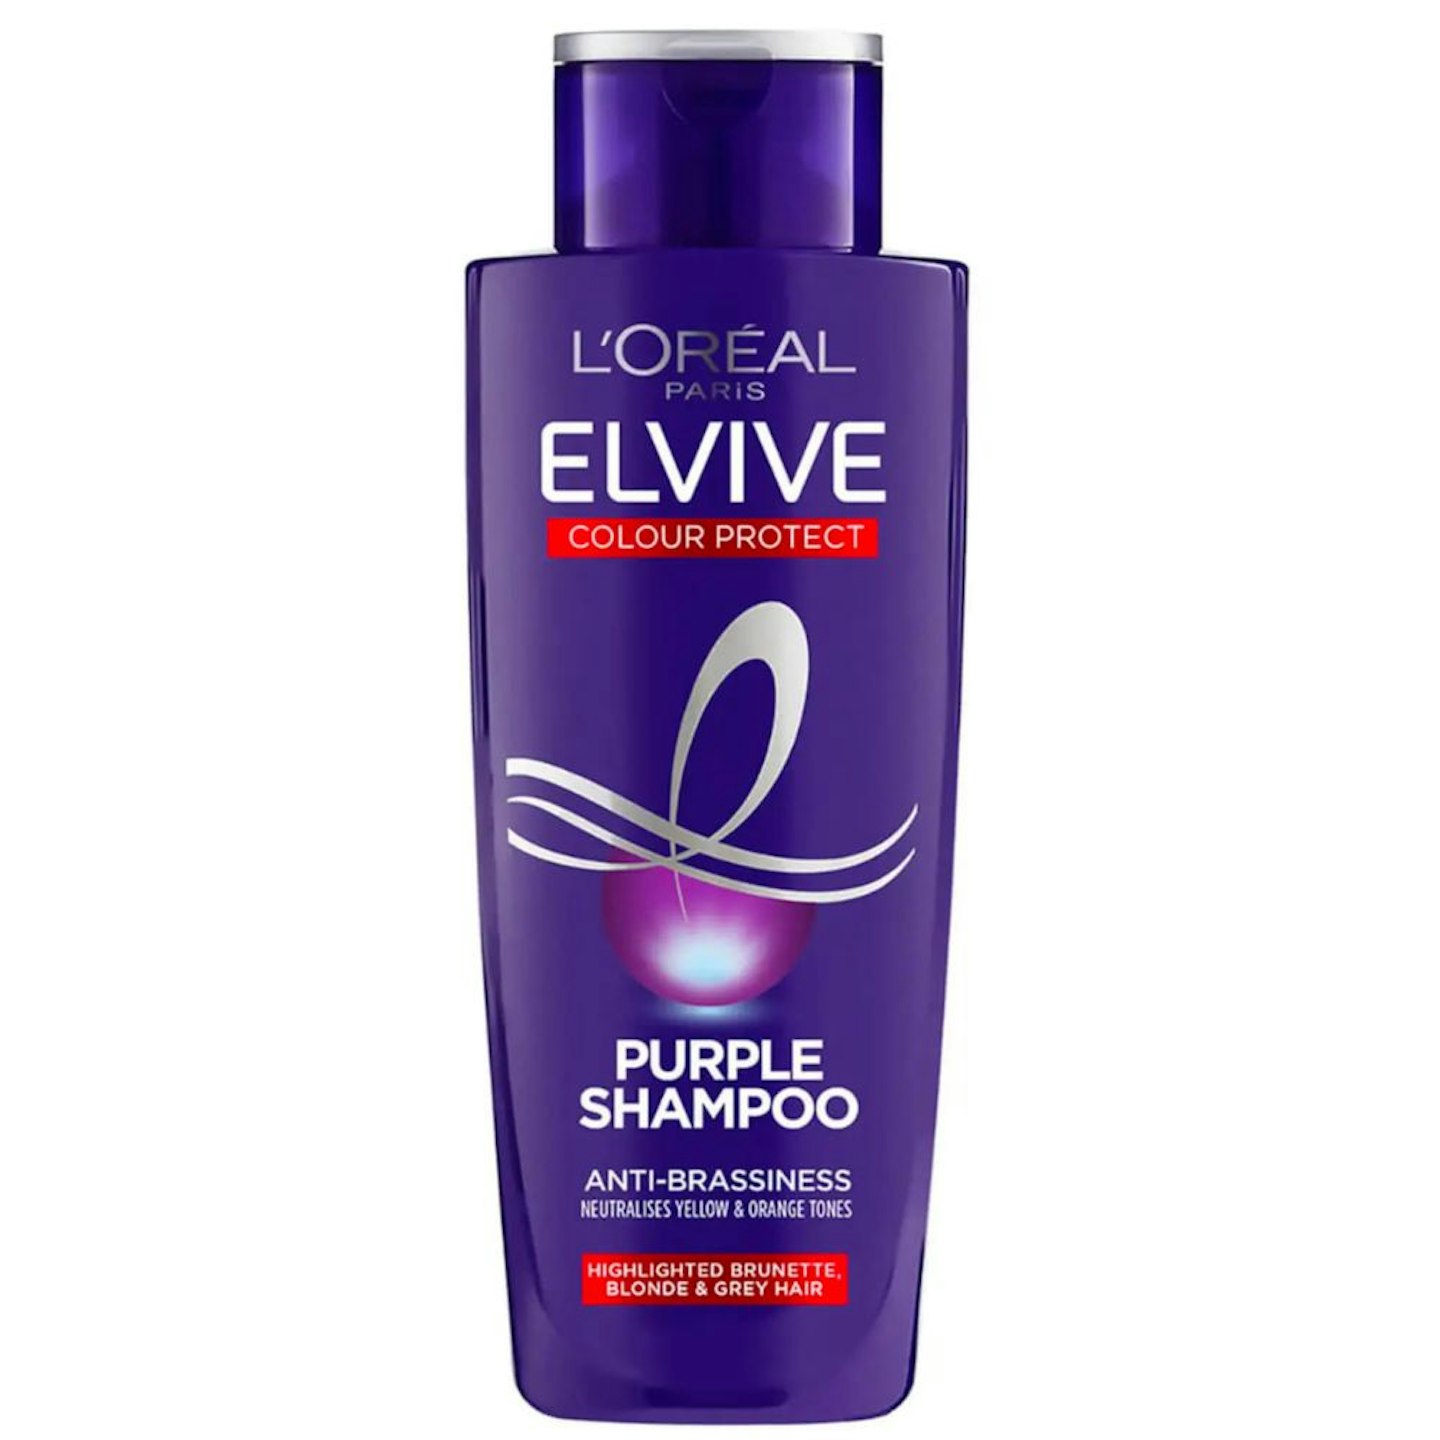 L'Oréal Paris Elvive Colour Protect Anti-Brassiness Purple Shampoo